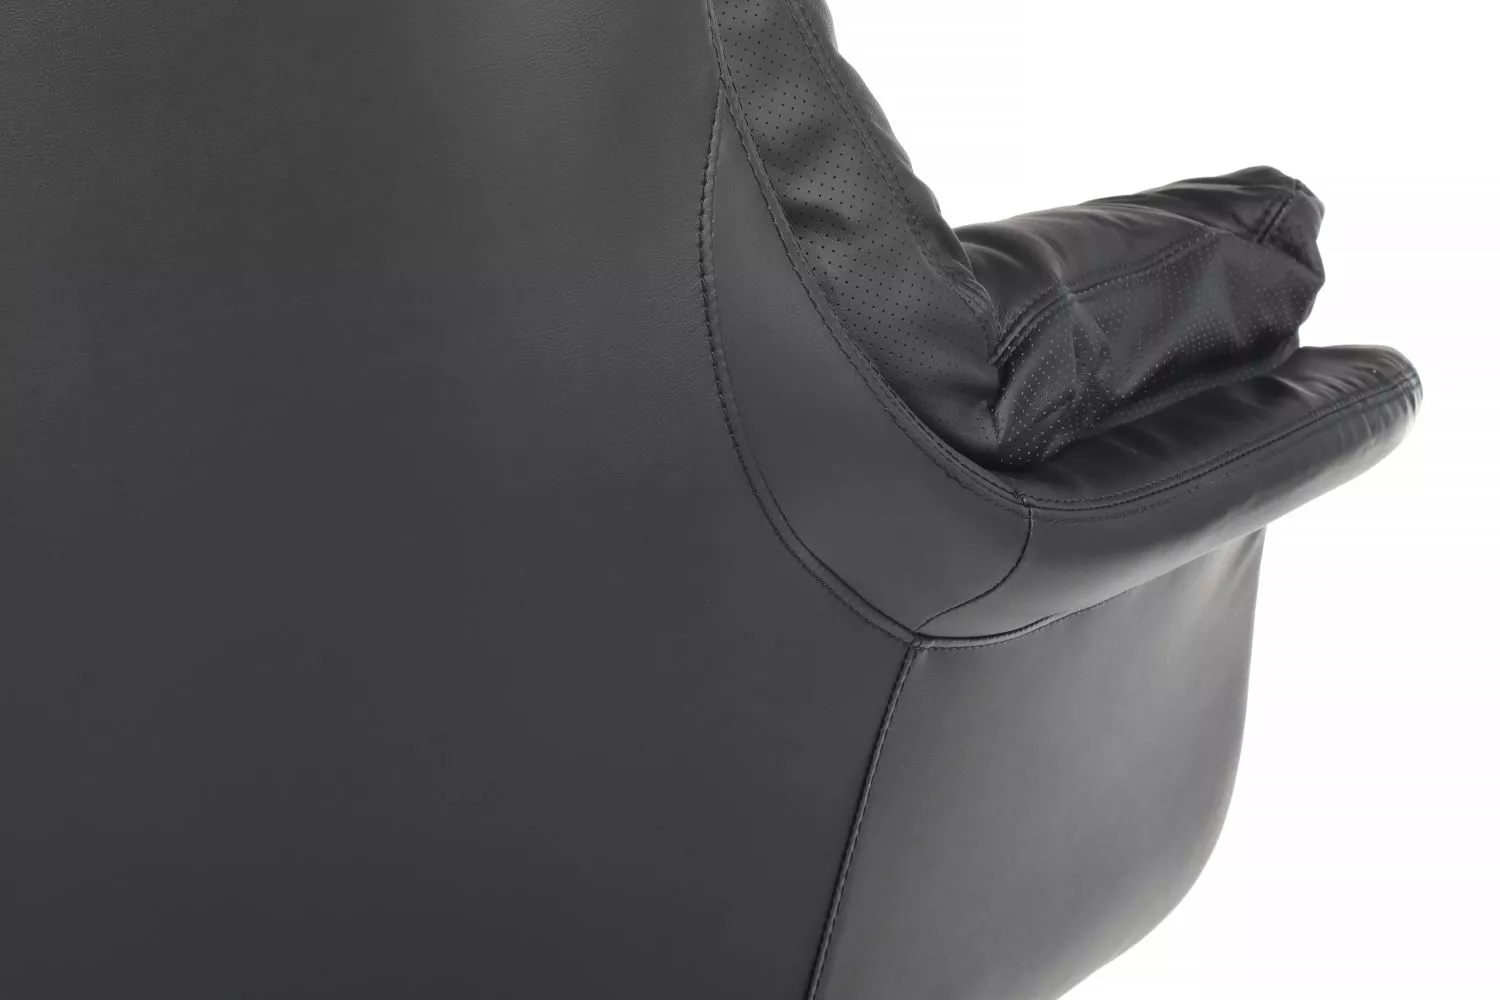 Кресло руководителя из натуральной кожи RIVA DESIGN Leonardo A355 черный